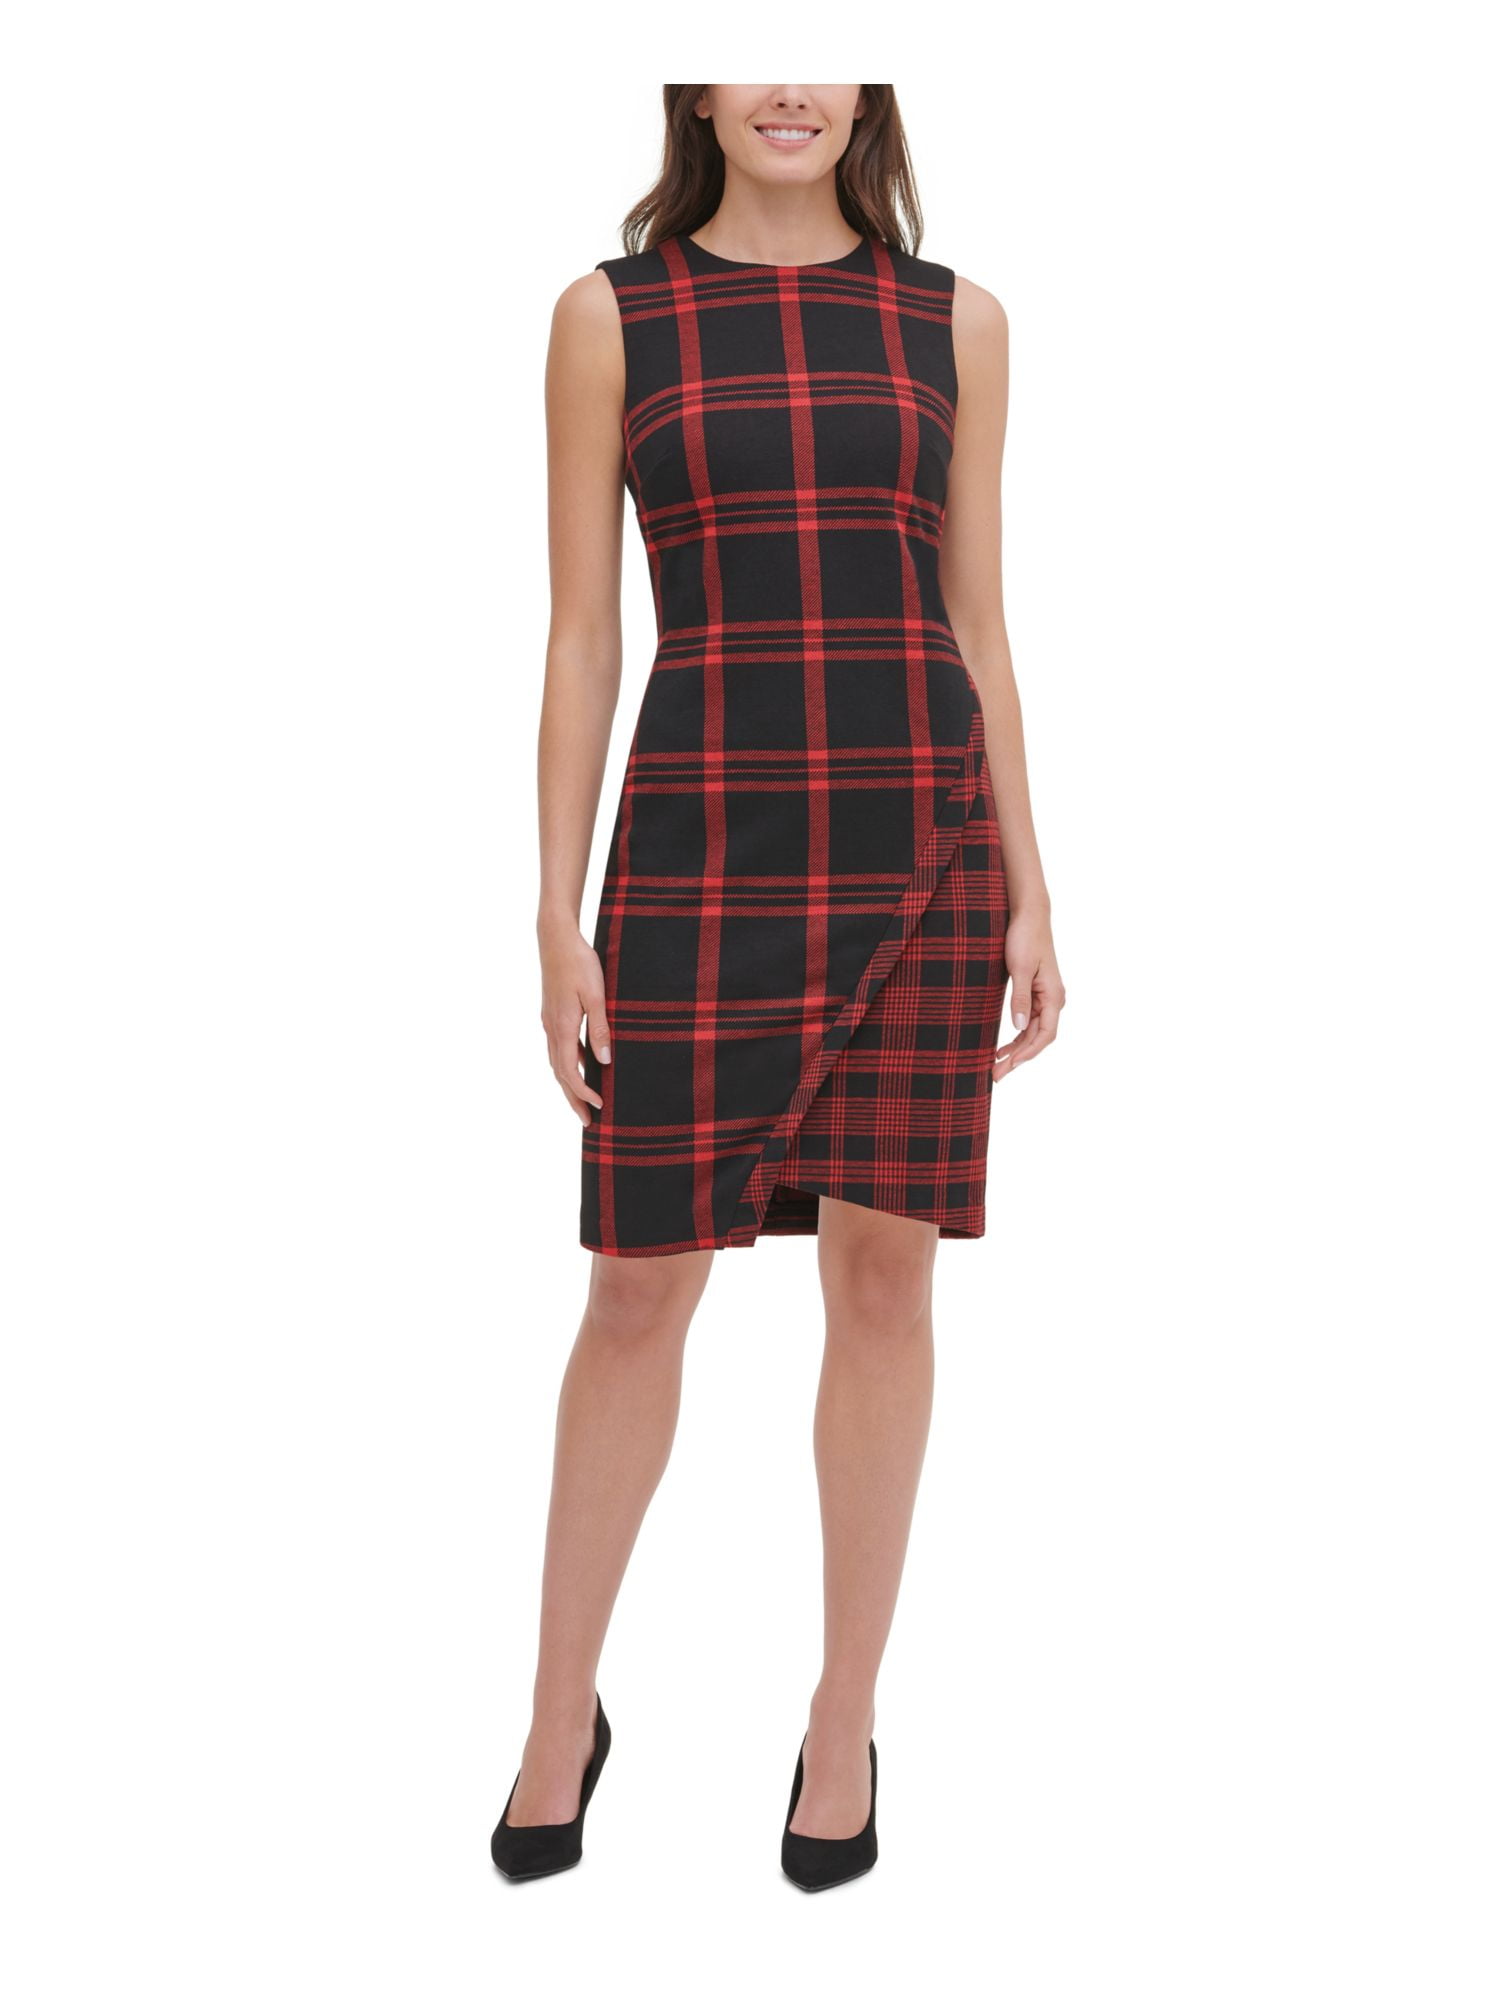 HILFIGER $129 New Sleeveless Sheath Dress 18 B+B - Walmart.com